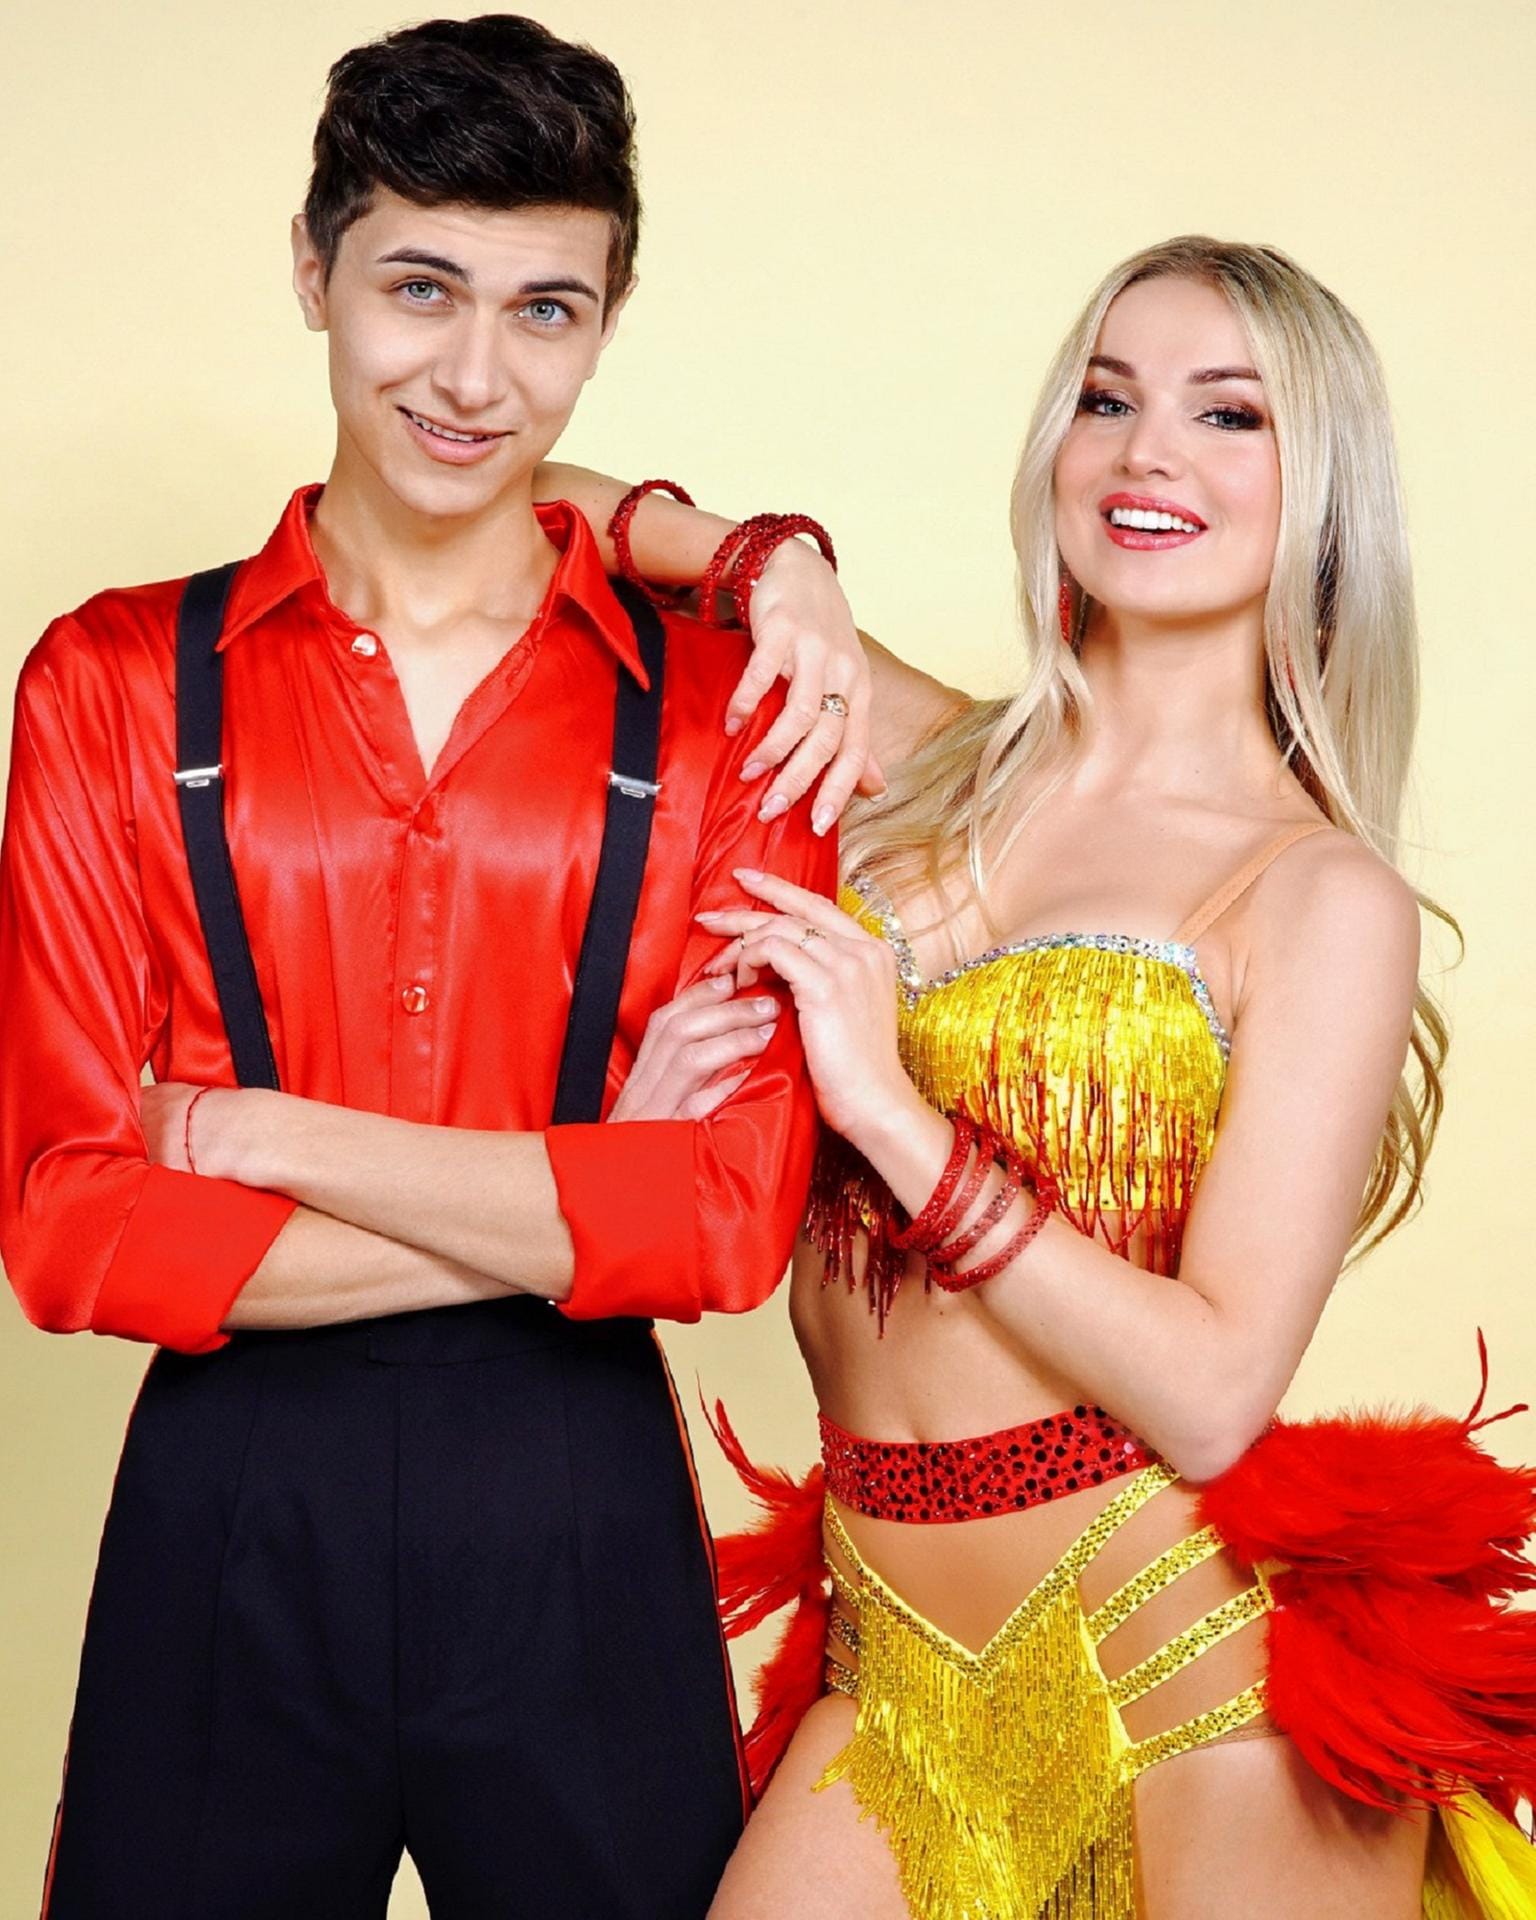 Lukas Rieger und Katja Kalugina: Salsa zu "Fireball" von Pitbull